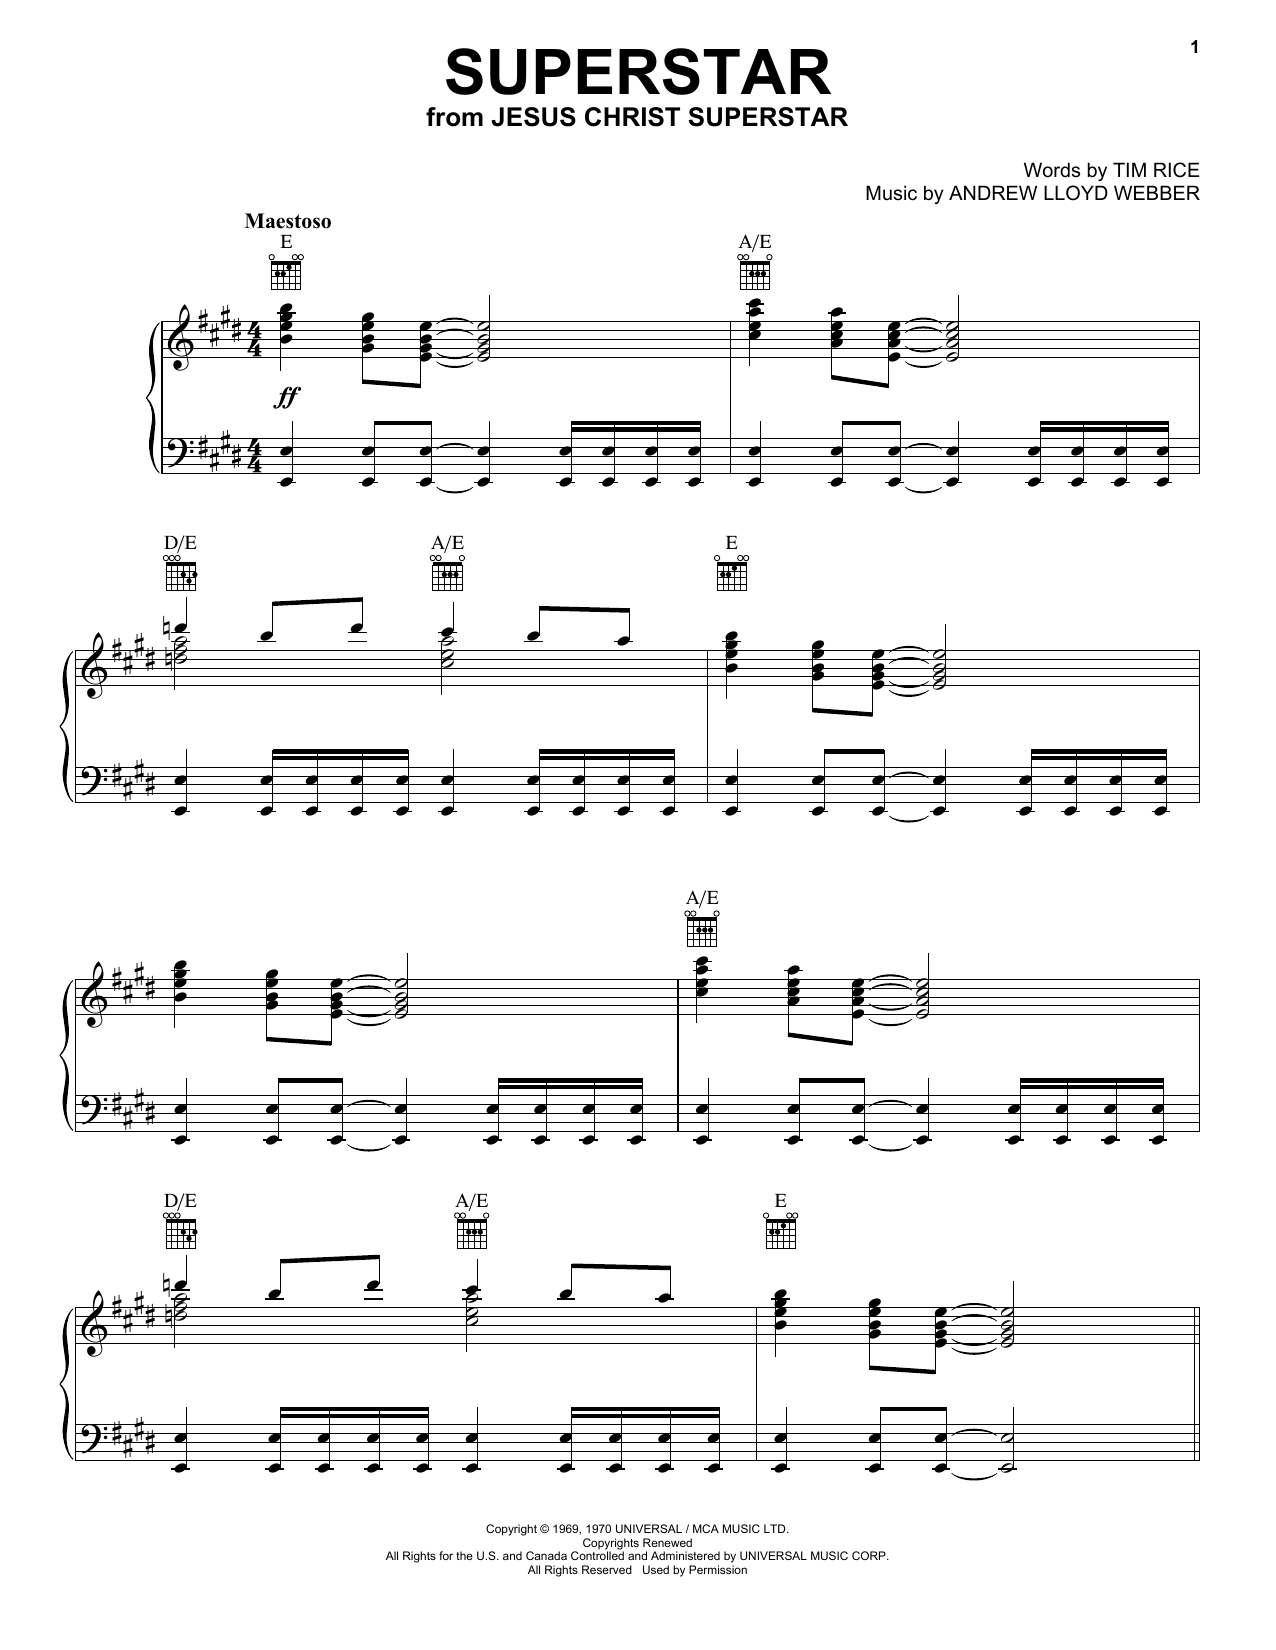 Andrew Lloyd Webber Superstar (from Jesus Christ Superstar) Sheet Music Notes & Chords for Flute - Download or Print PDF